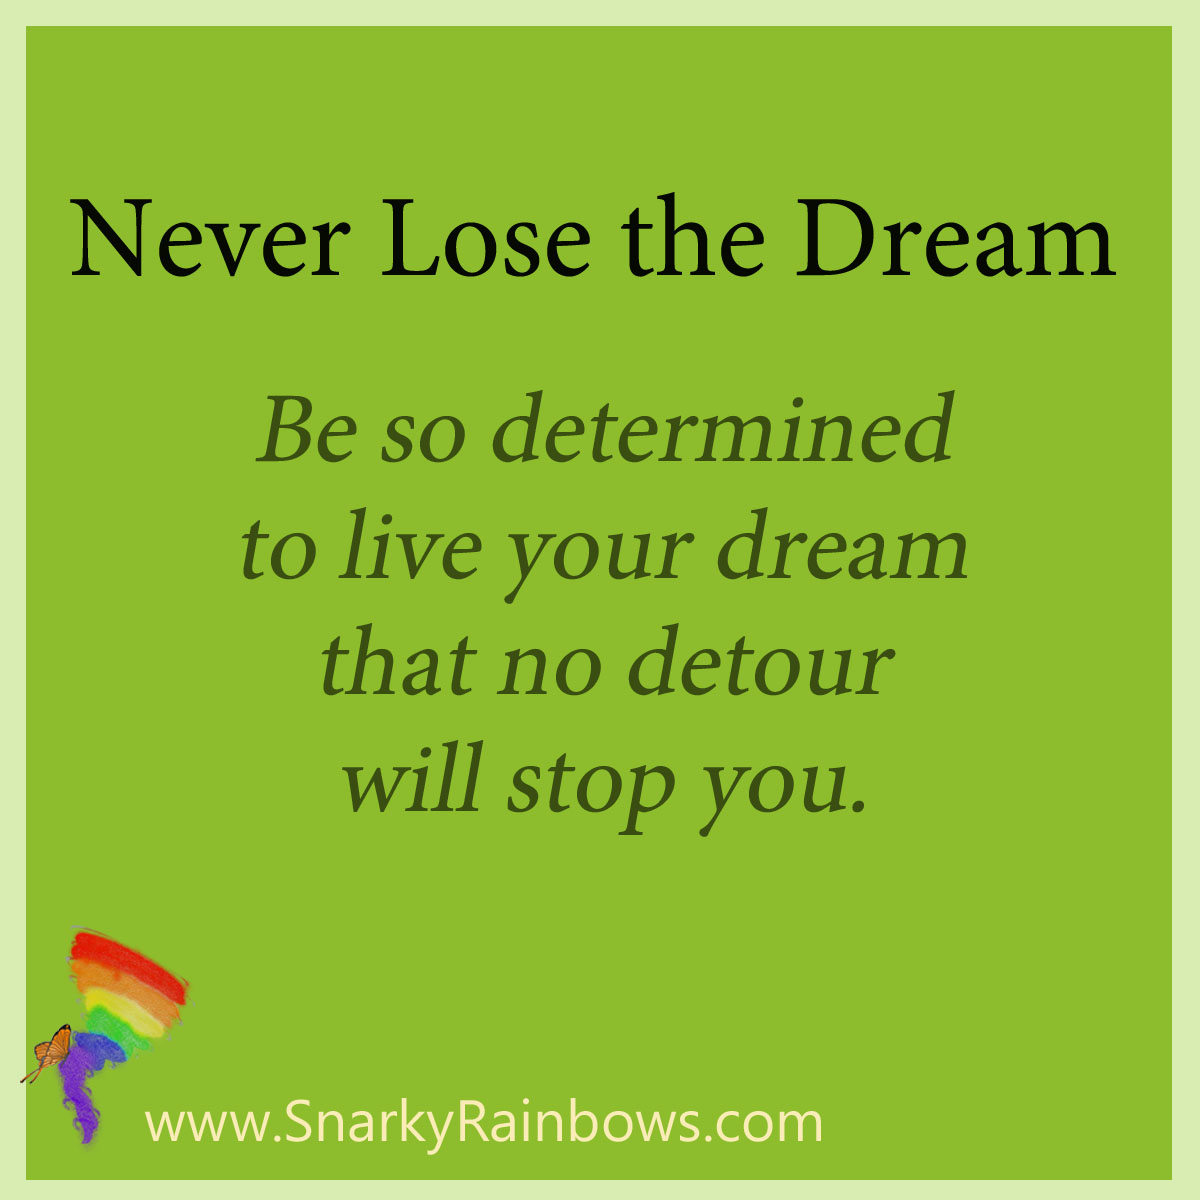 Never lose the dream